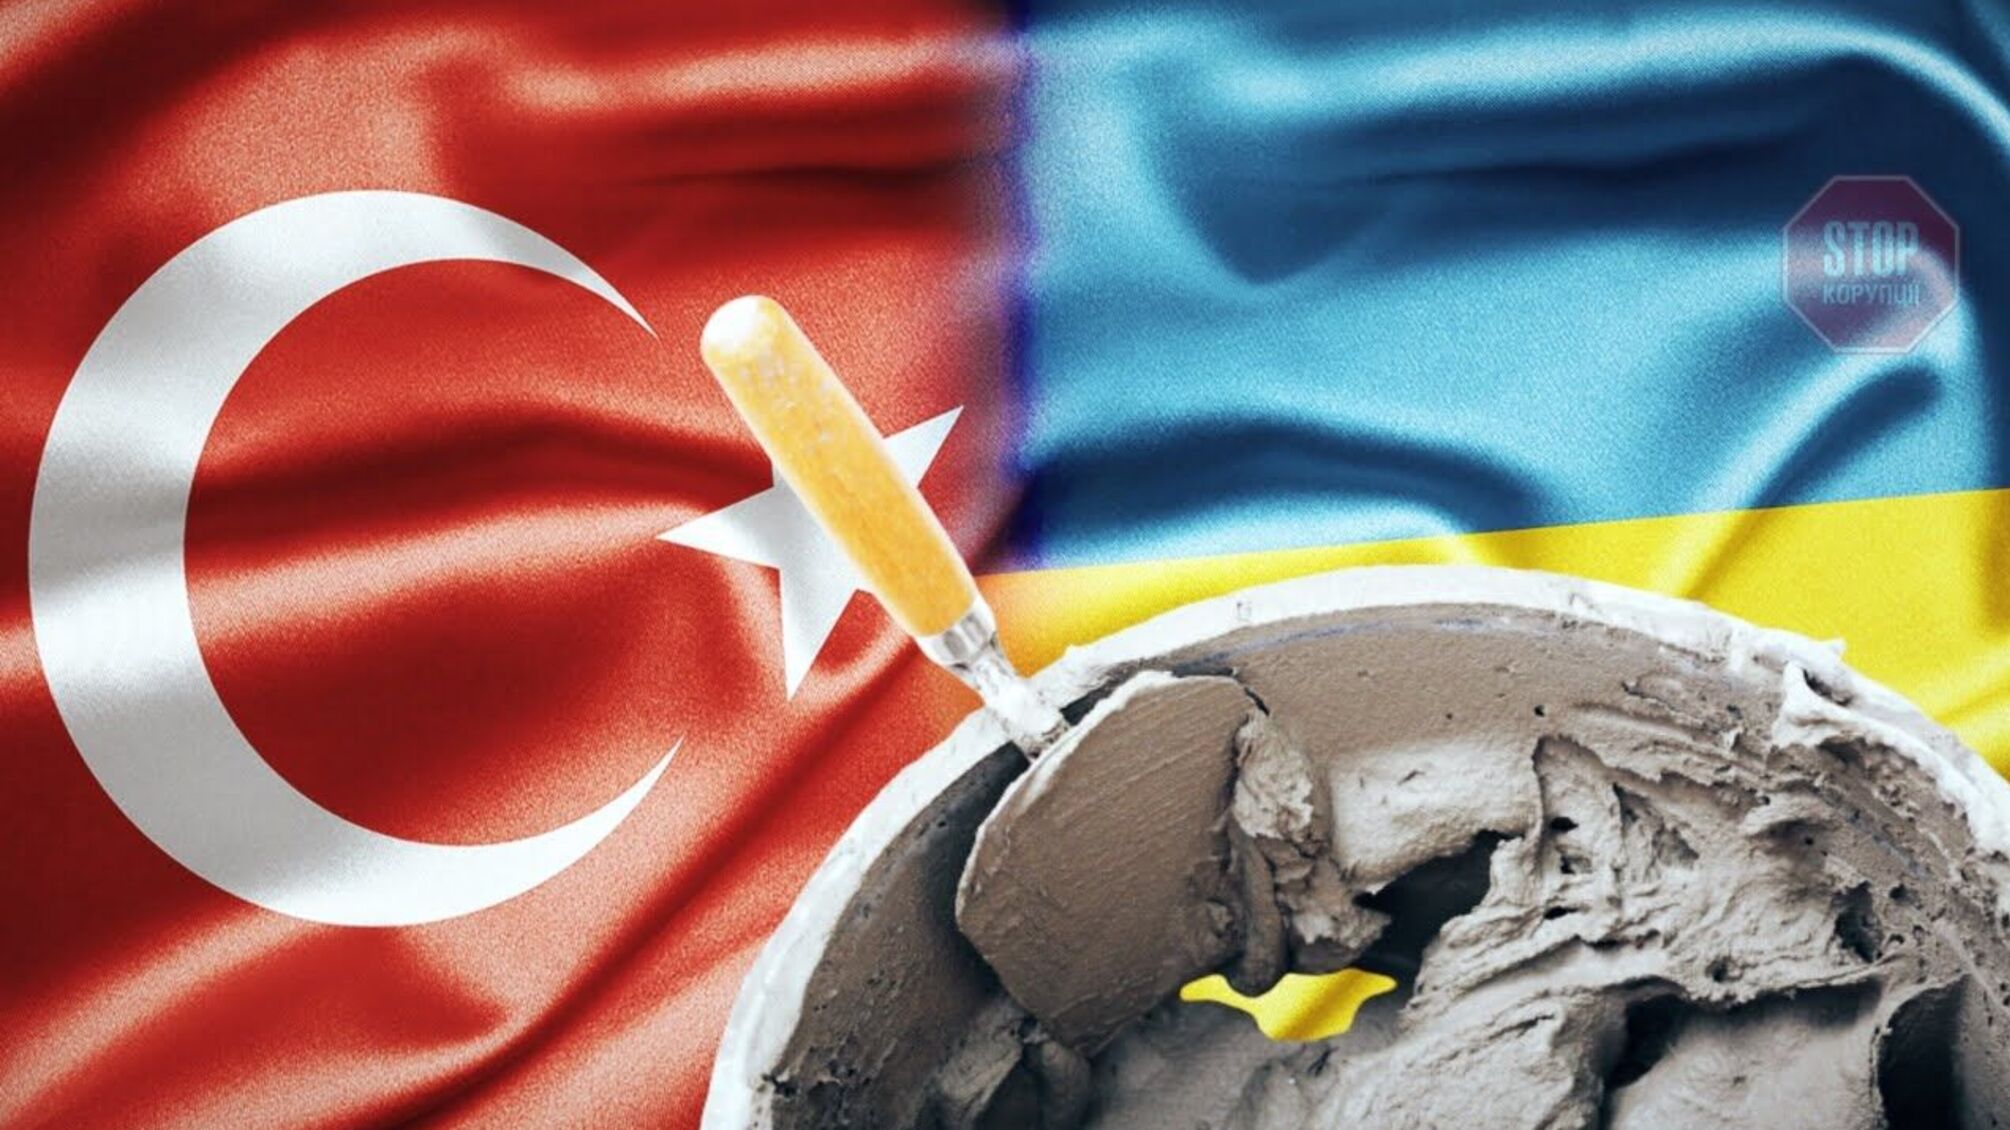 Турецькі цементники захоплюють вітчизняний ринок